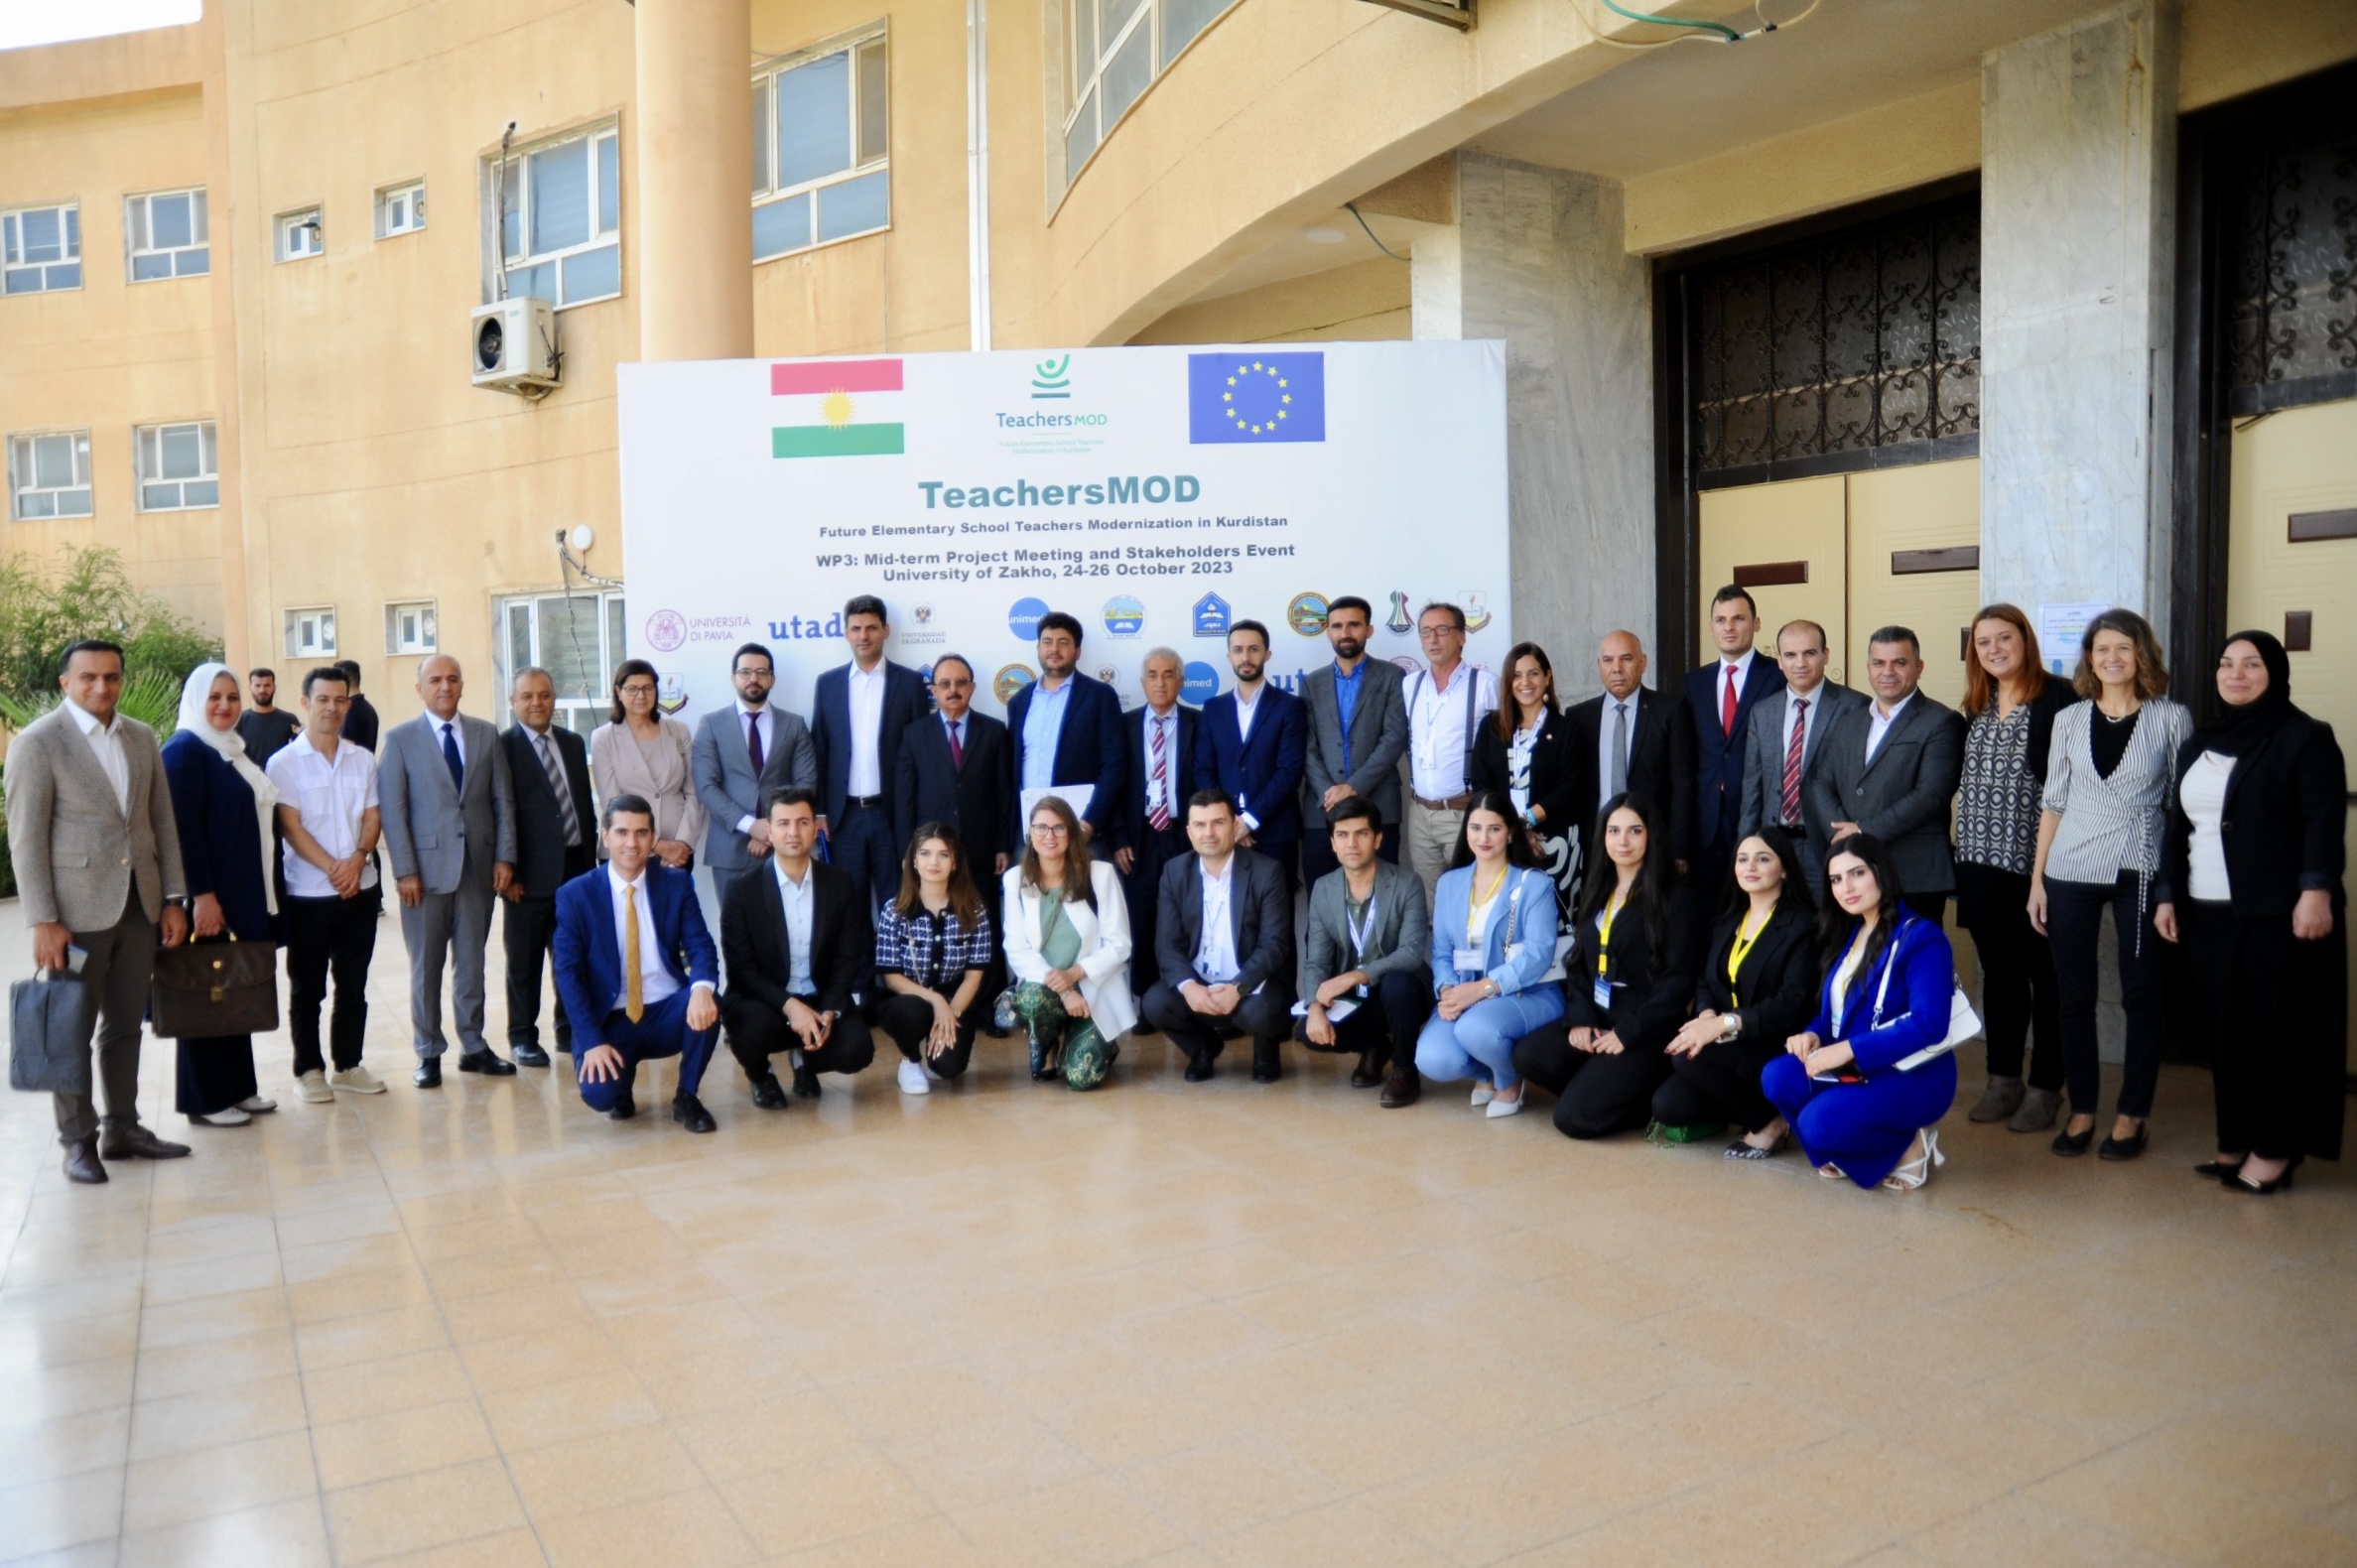 Foto de grupo de los asistentes a la reunión del proyecto europeo TeachersMOD